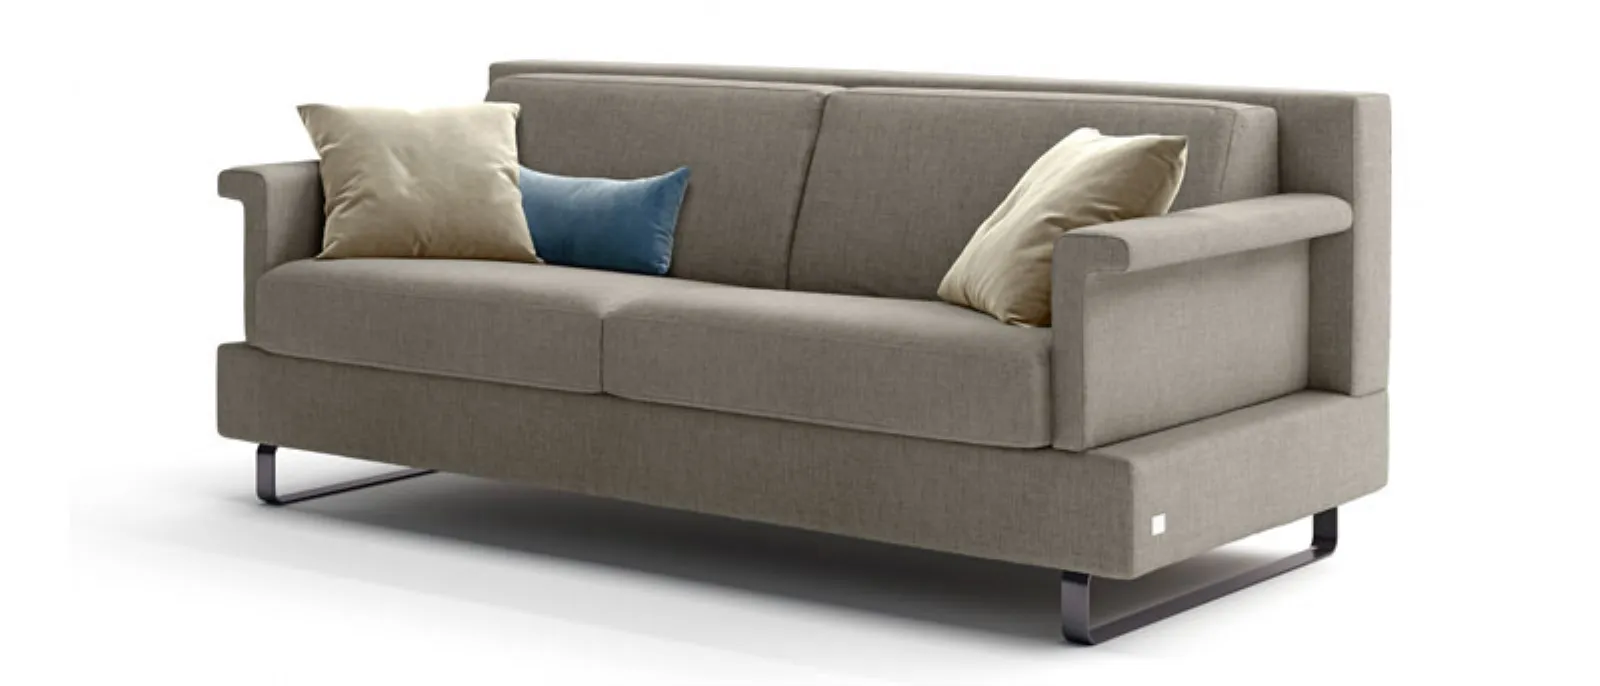 sofa bed shaped armrest